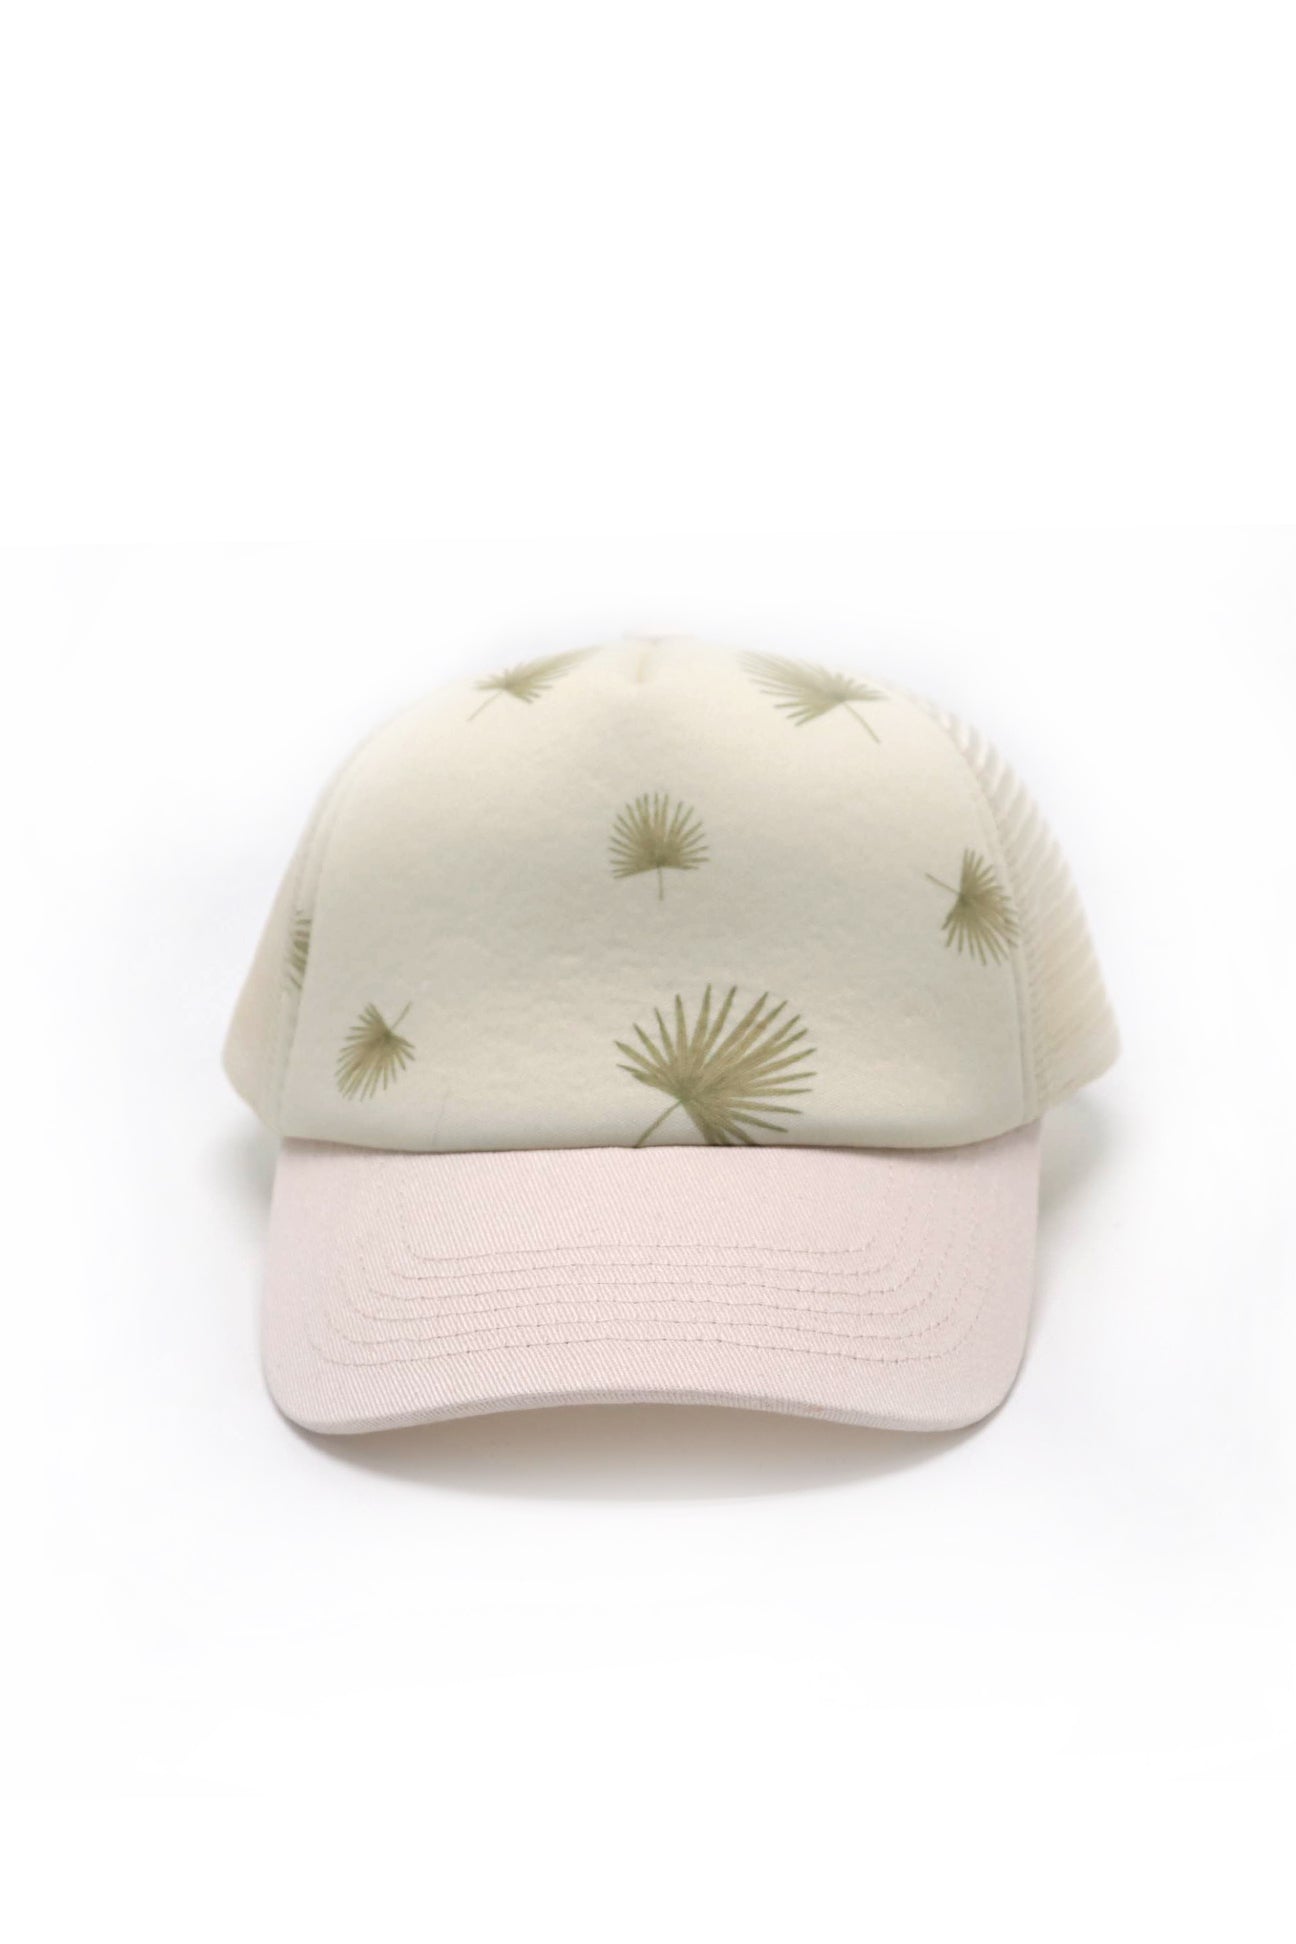 Keiki Trucker Hat - Fan Palm